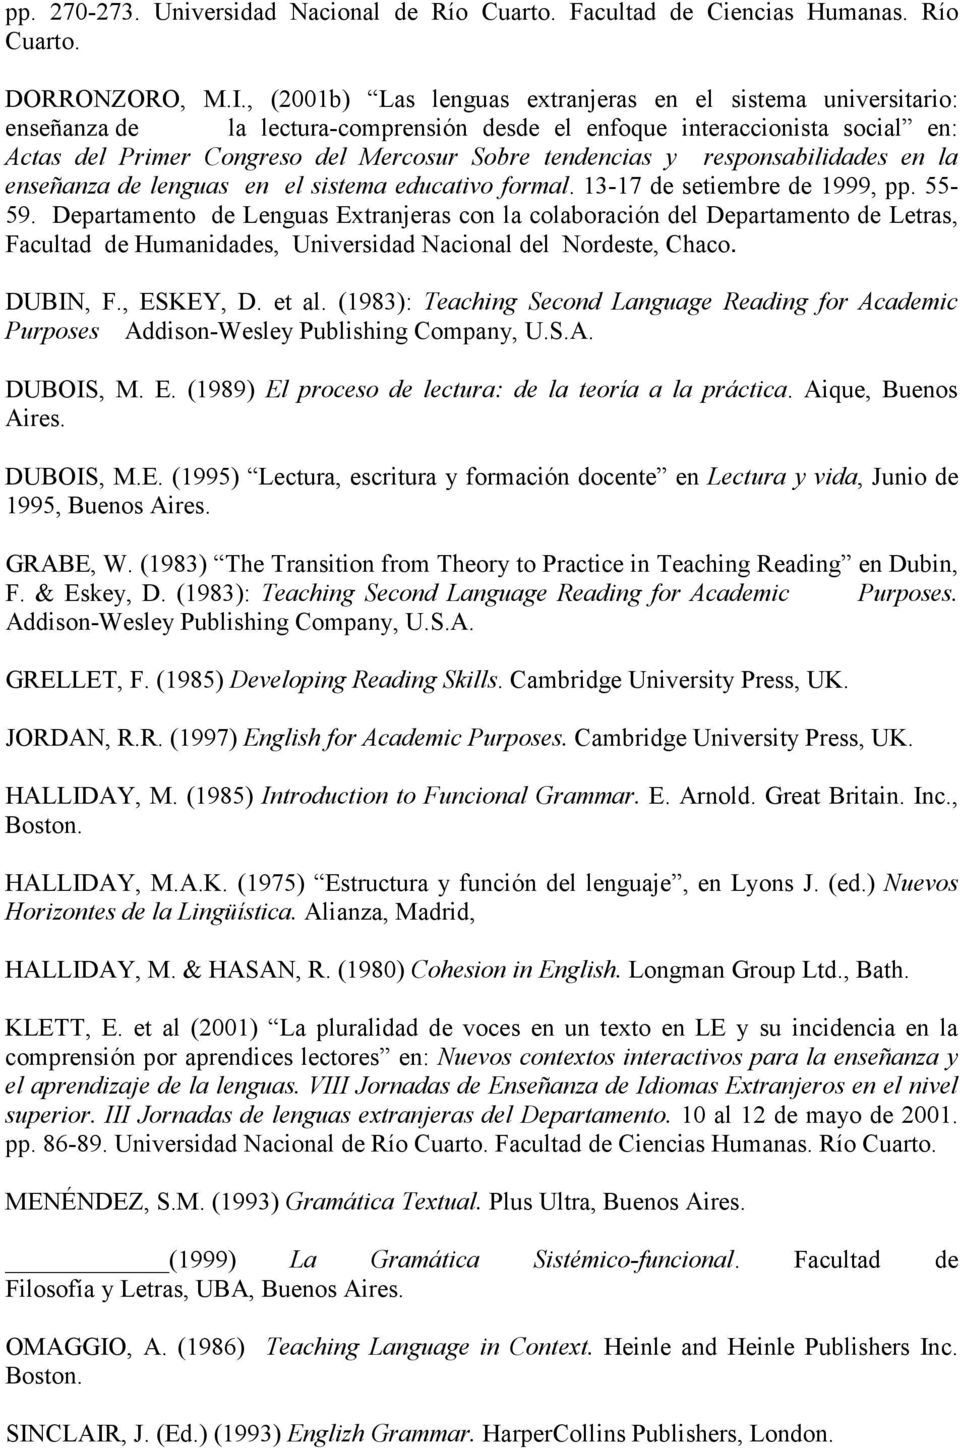 y responsabilidades en la enseñanza de lenguas en el sistema educativo formal. 13-17 de setiembre de 1999, pp. 55-59.